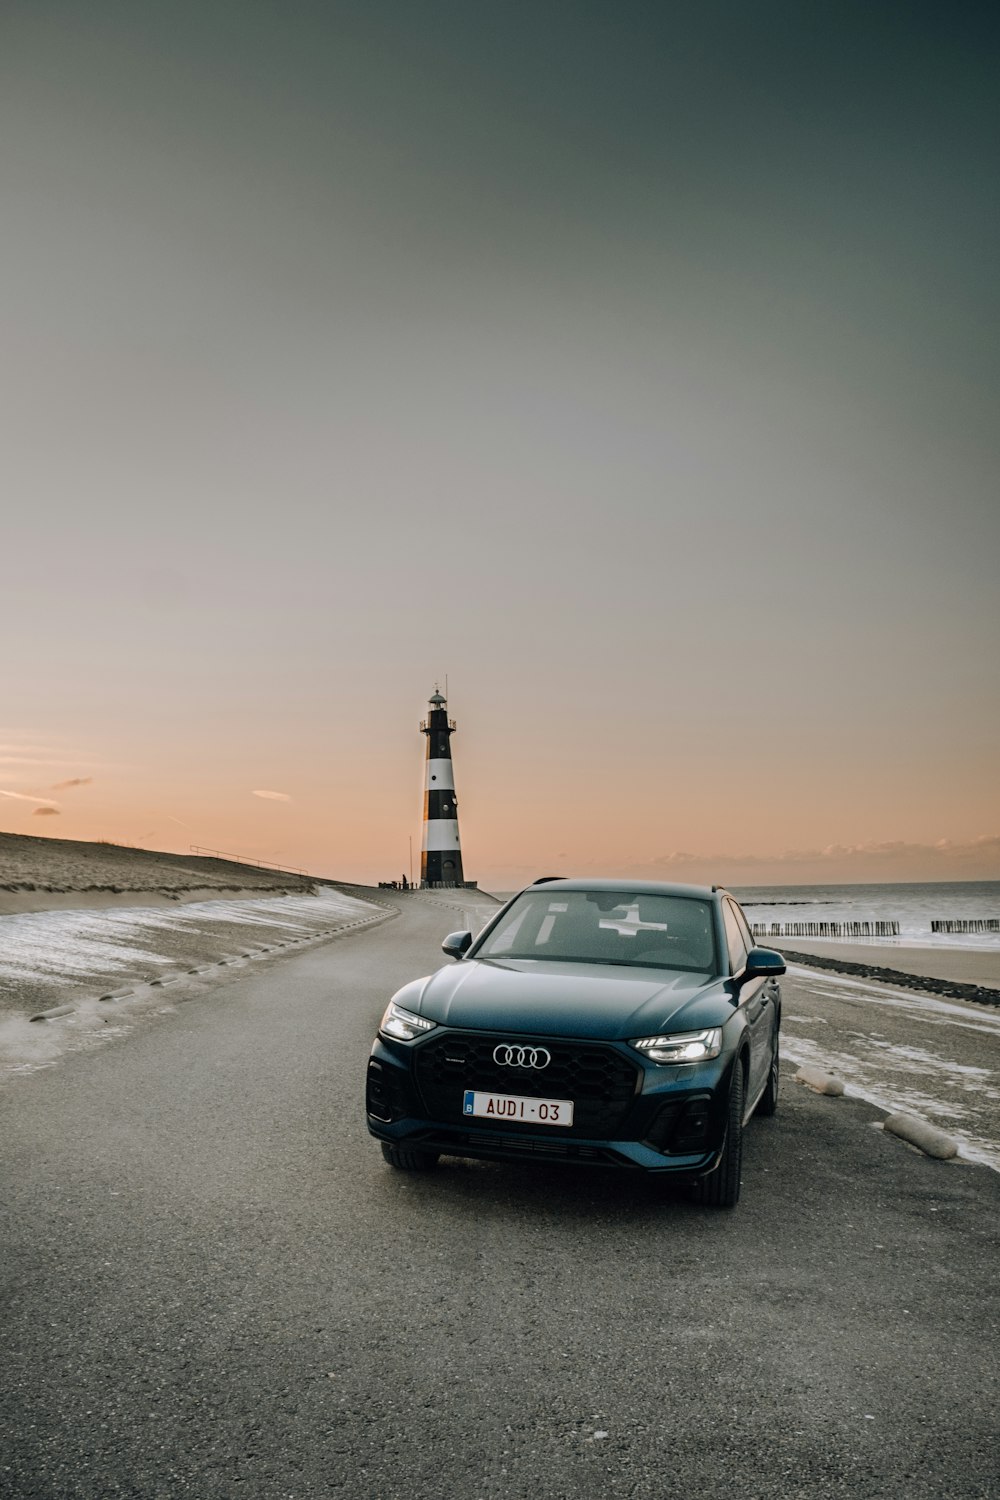 Audi A 4 noire sur une plage